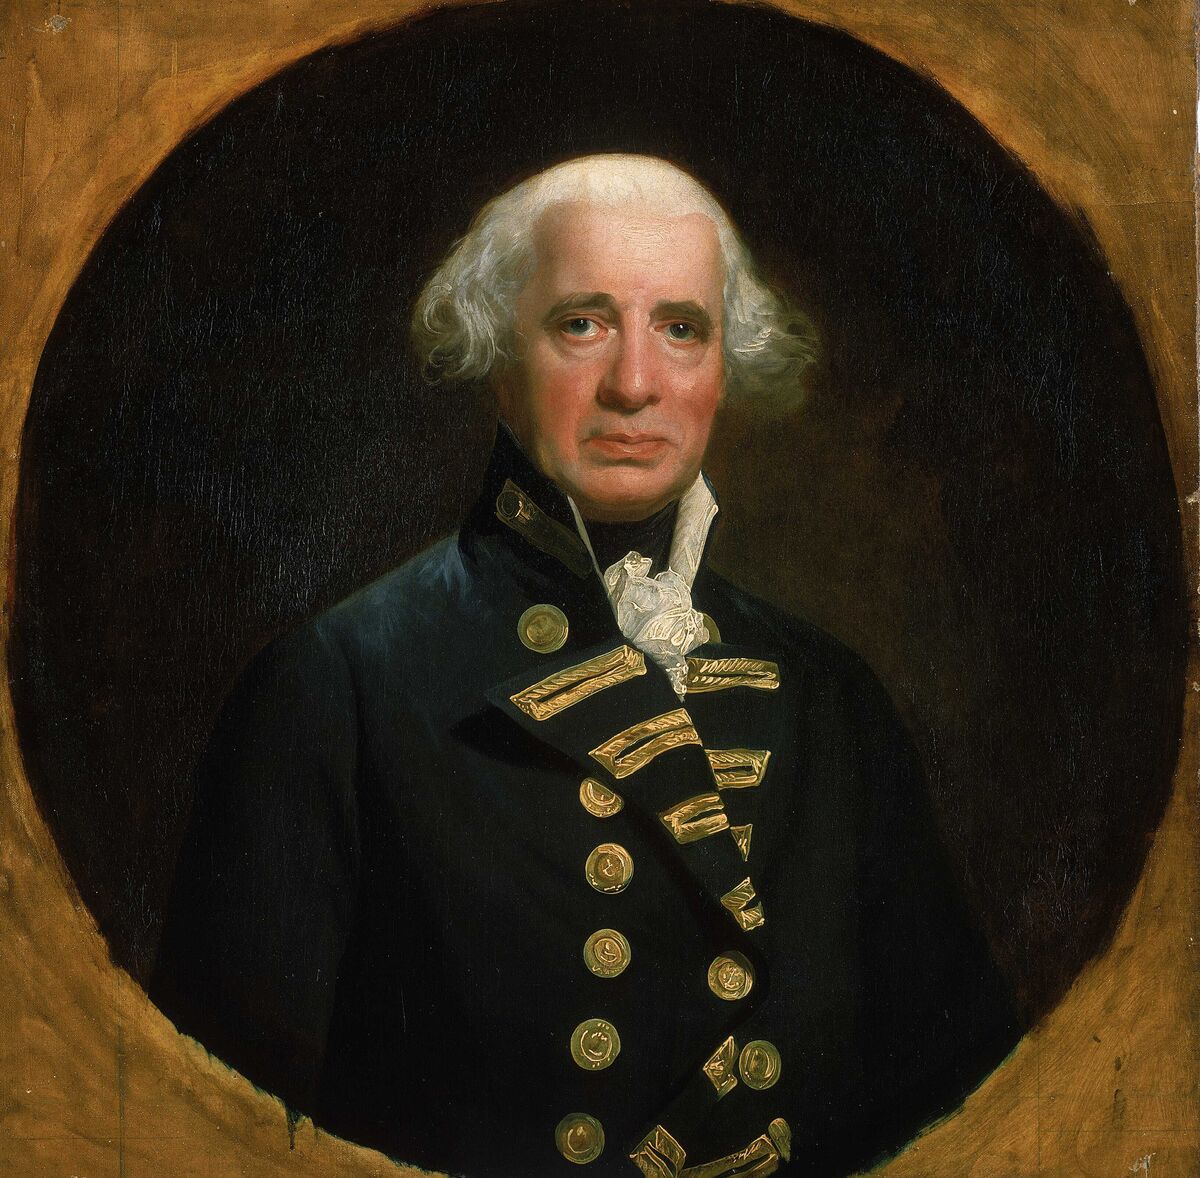 GFD 1/127: Admiral Richard Howe (Portrait von John Singleton Copley, 1794)